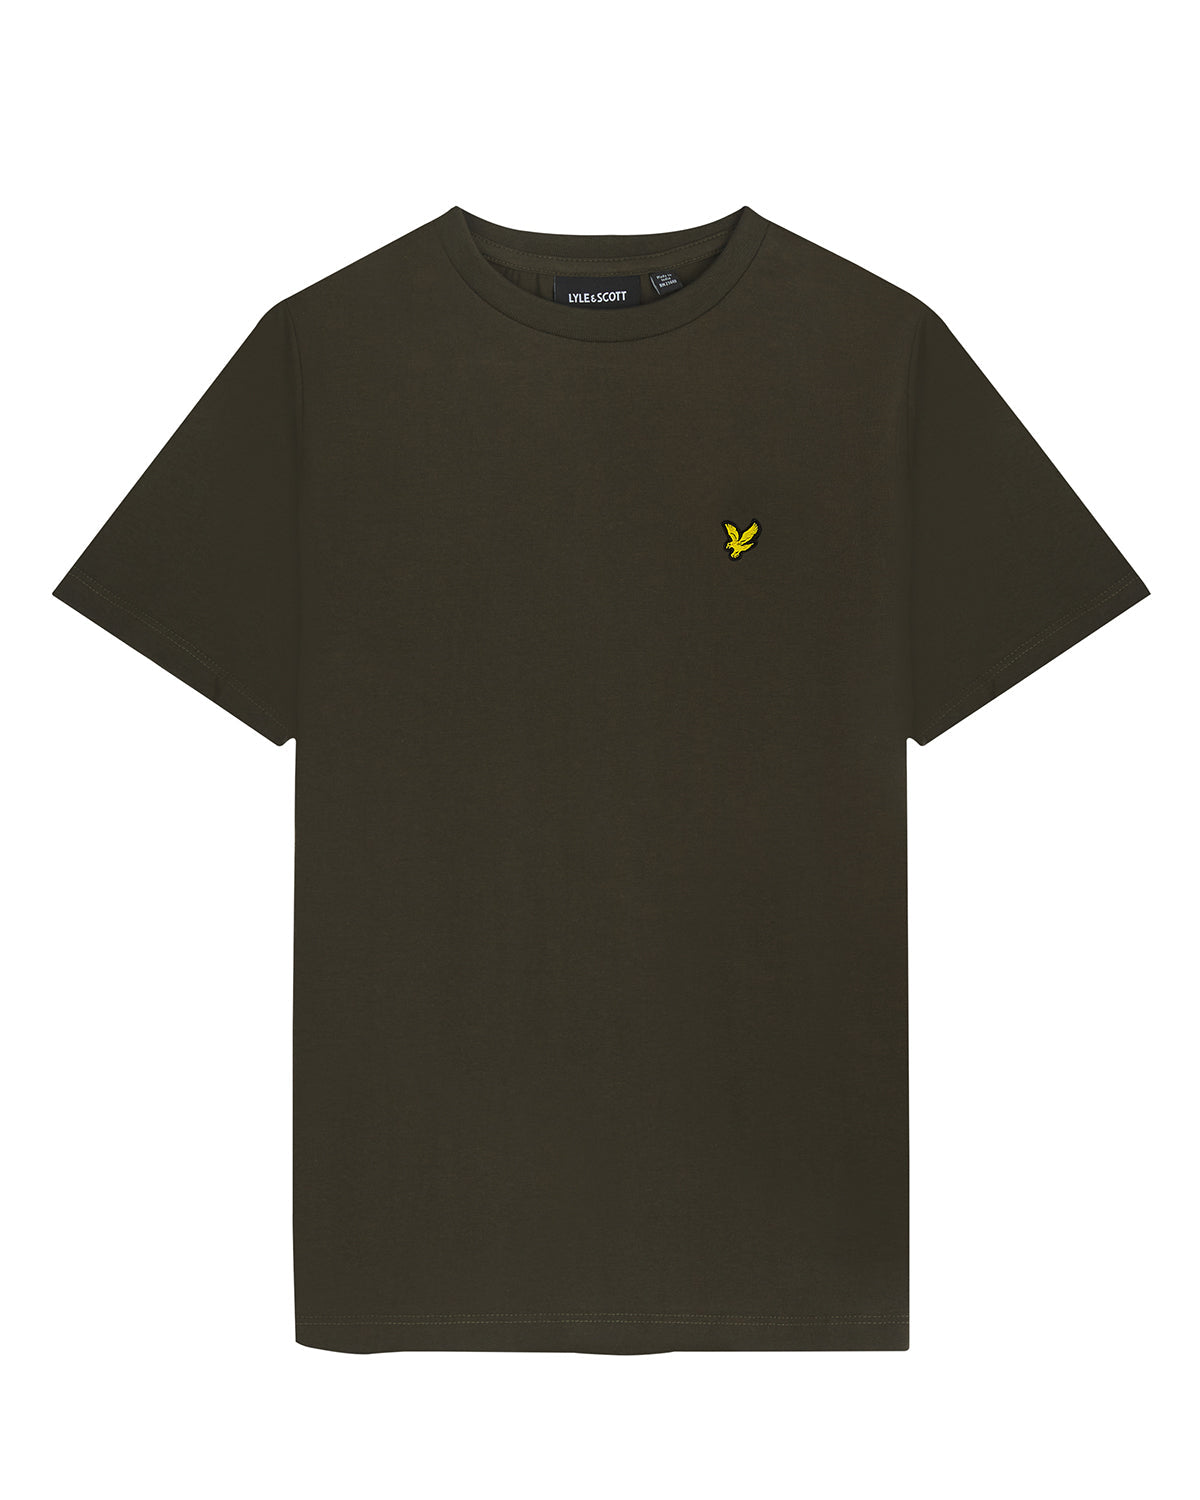 Jongens Plain T-shirt van Lyle & Scott in de kleur W485 Olive in maat 170-176.